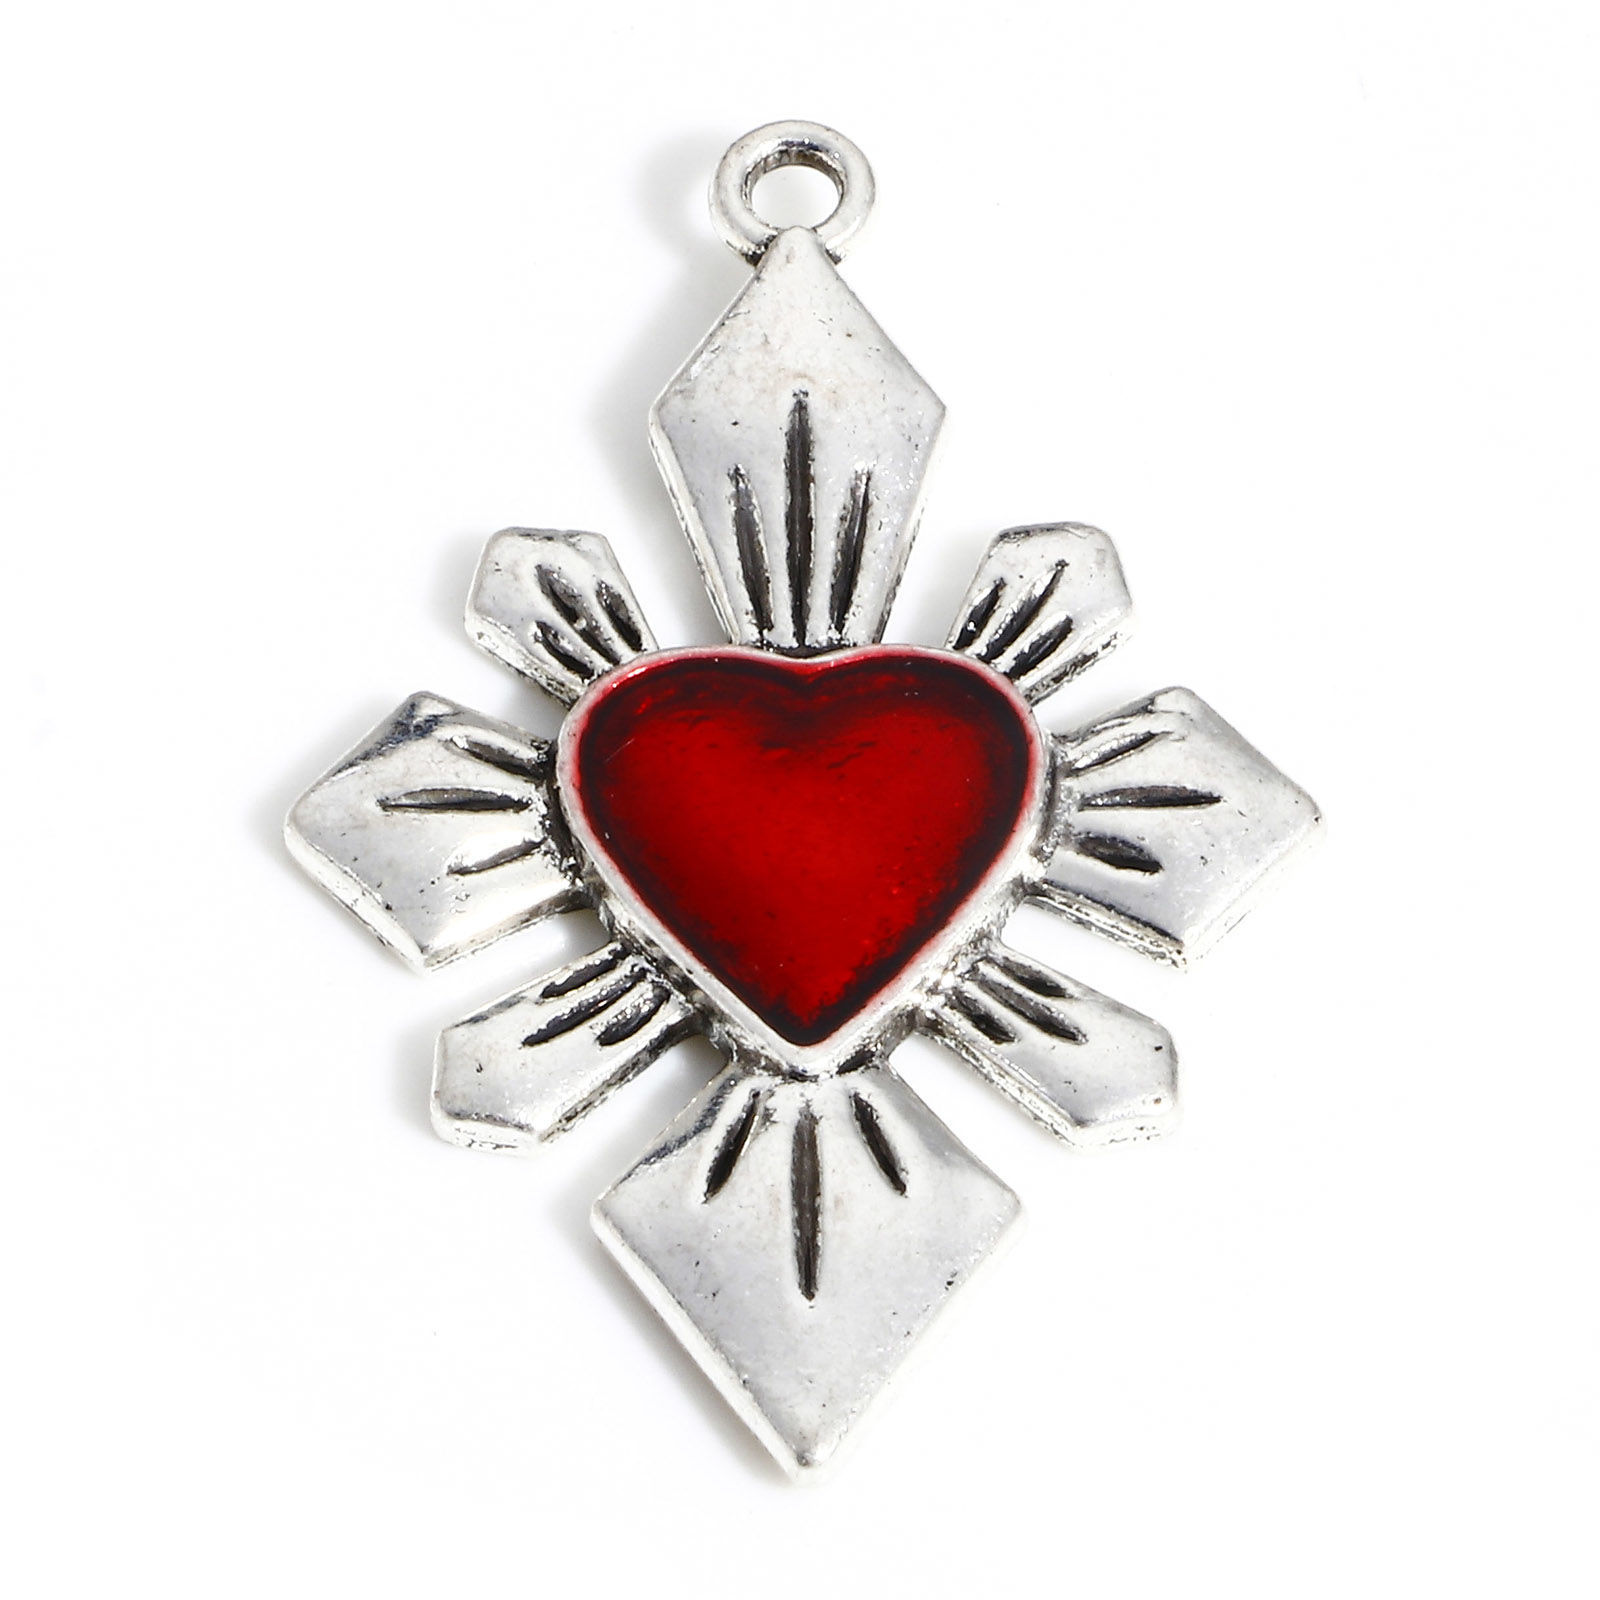 Picture of Zinc Based Alloy Religious Pendants Antique Silver Color Red Ex Voto Heart Cross Enamel 4cm x 2.5cm, 5 PCs